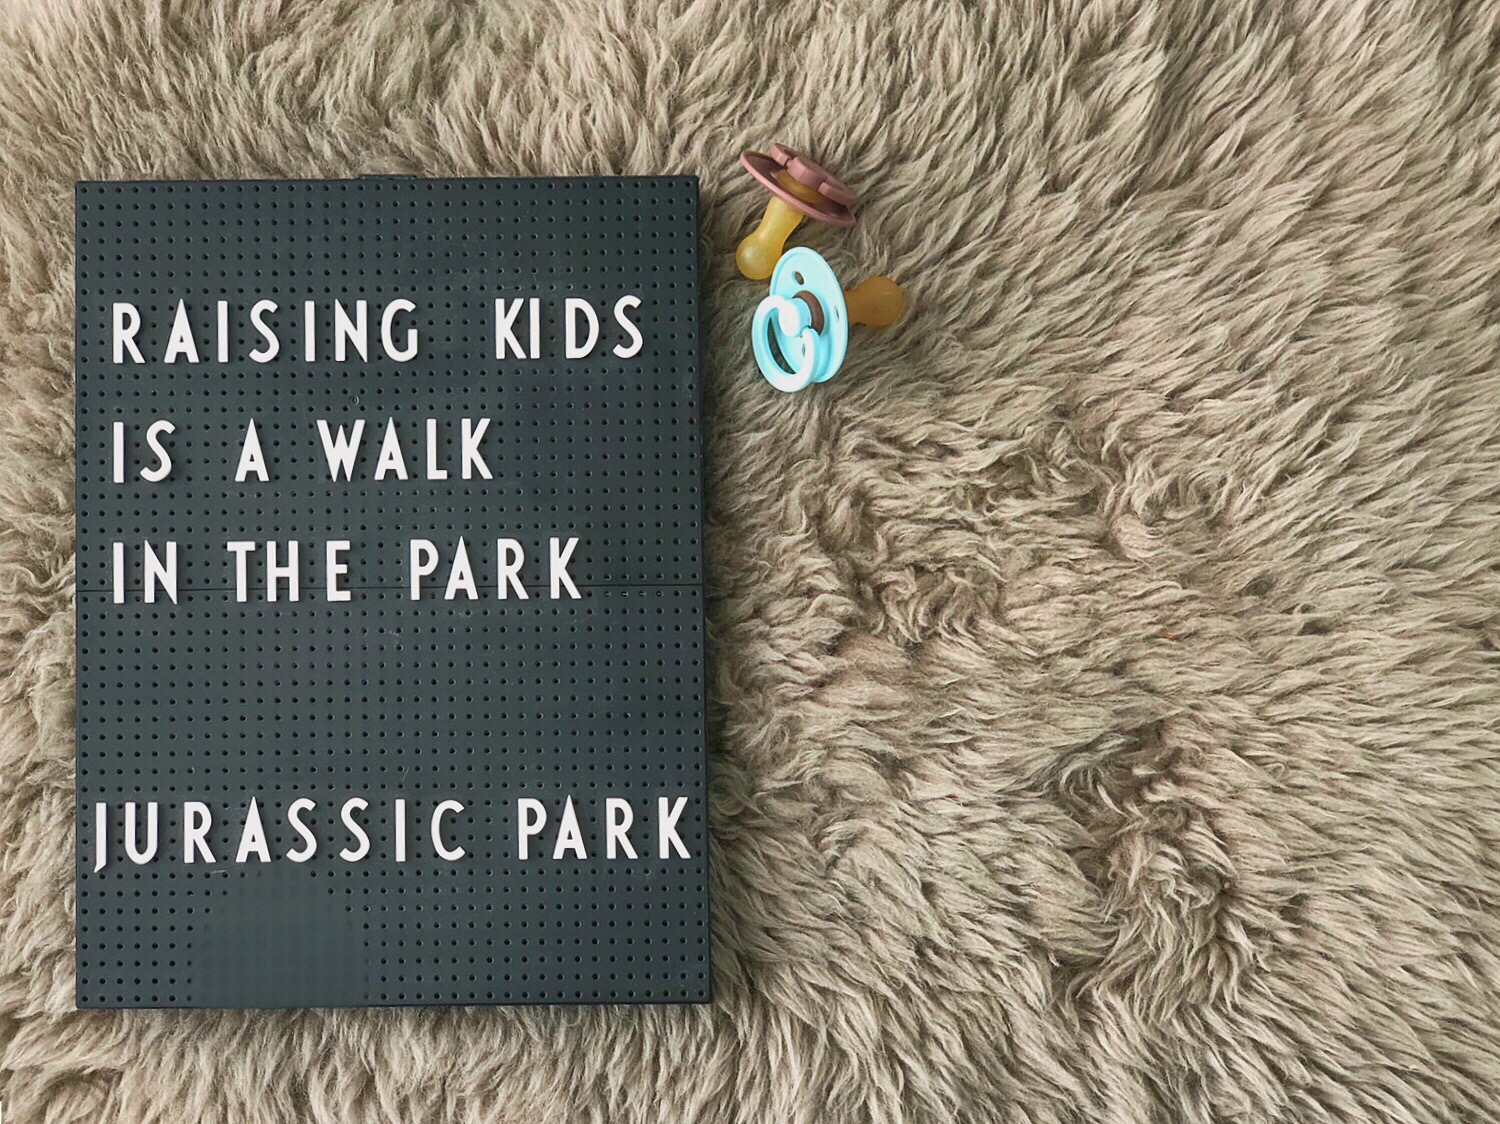 "Gyermeket nevelni olyan, mint sétálni egy parkban. Mondjuk a Jurassic Parkban." De vajon tényleg ennyire nehéz a gyermeknevelés? Másoknak miért megy olyan könnyen?